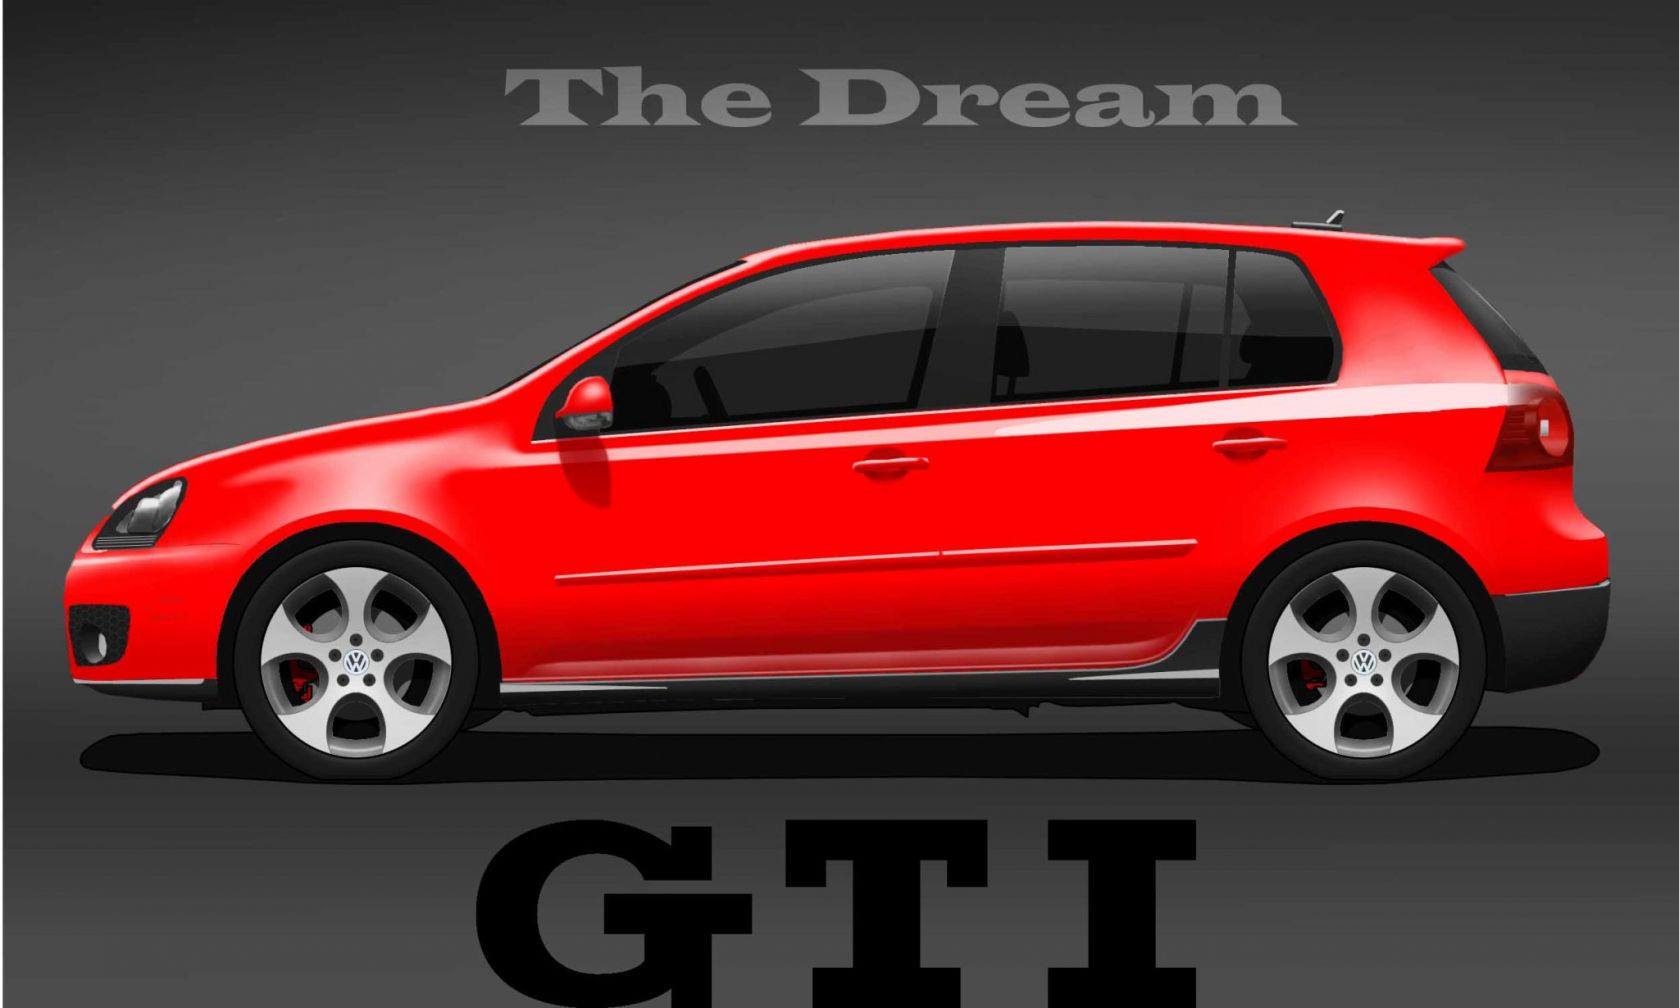 GTI V The Dream
il sogno da realizzare...
